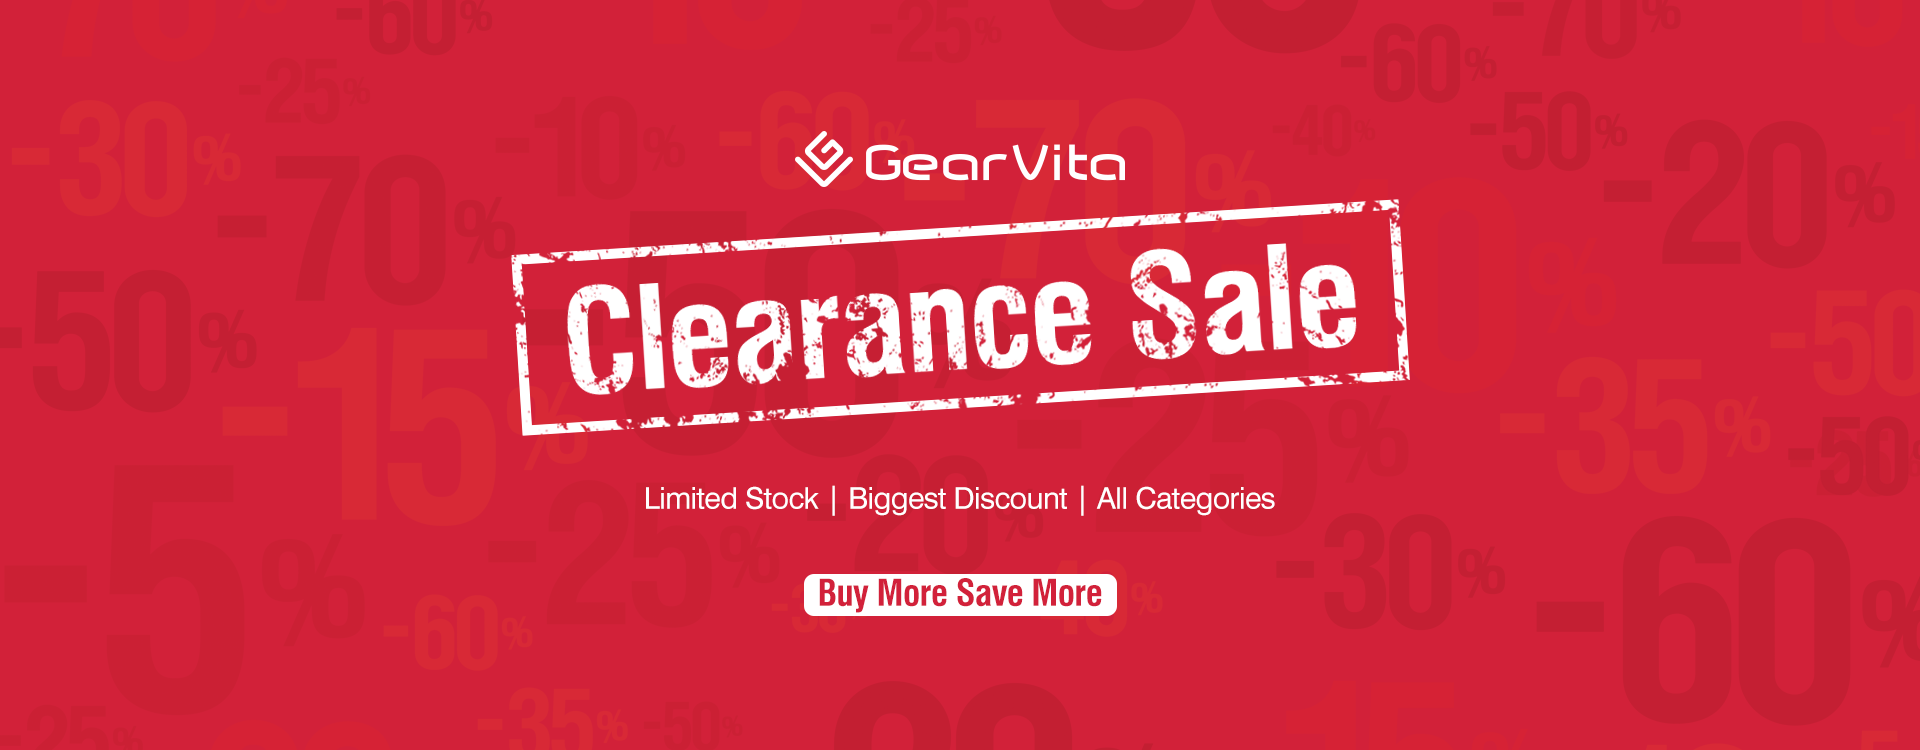 GearVita Clearance Sale